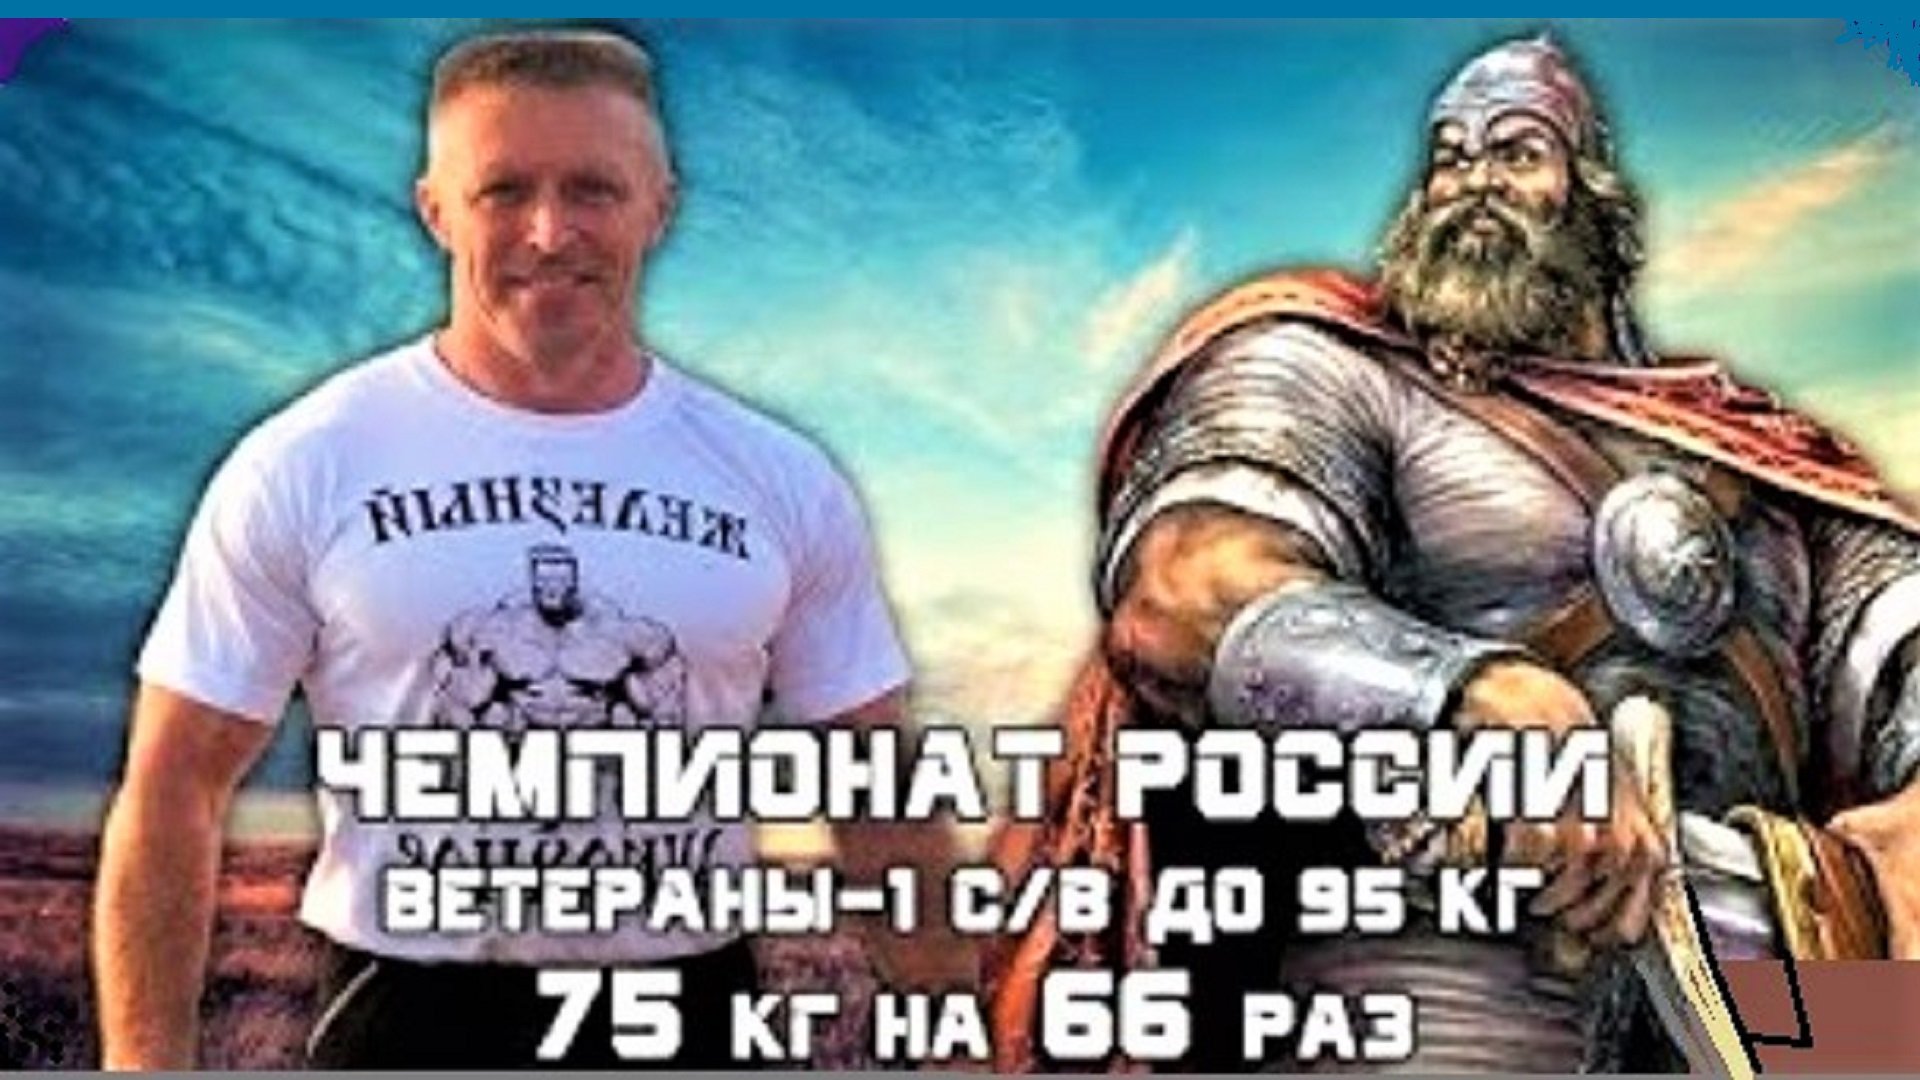 Алексей Аникин. РУССКИЙ ЖИМ 75 кг на 66 раз. ВЕТЕРАНЫ-1 старше 40 лет, с/в до 95 кг.